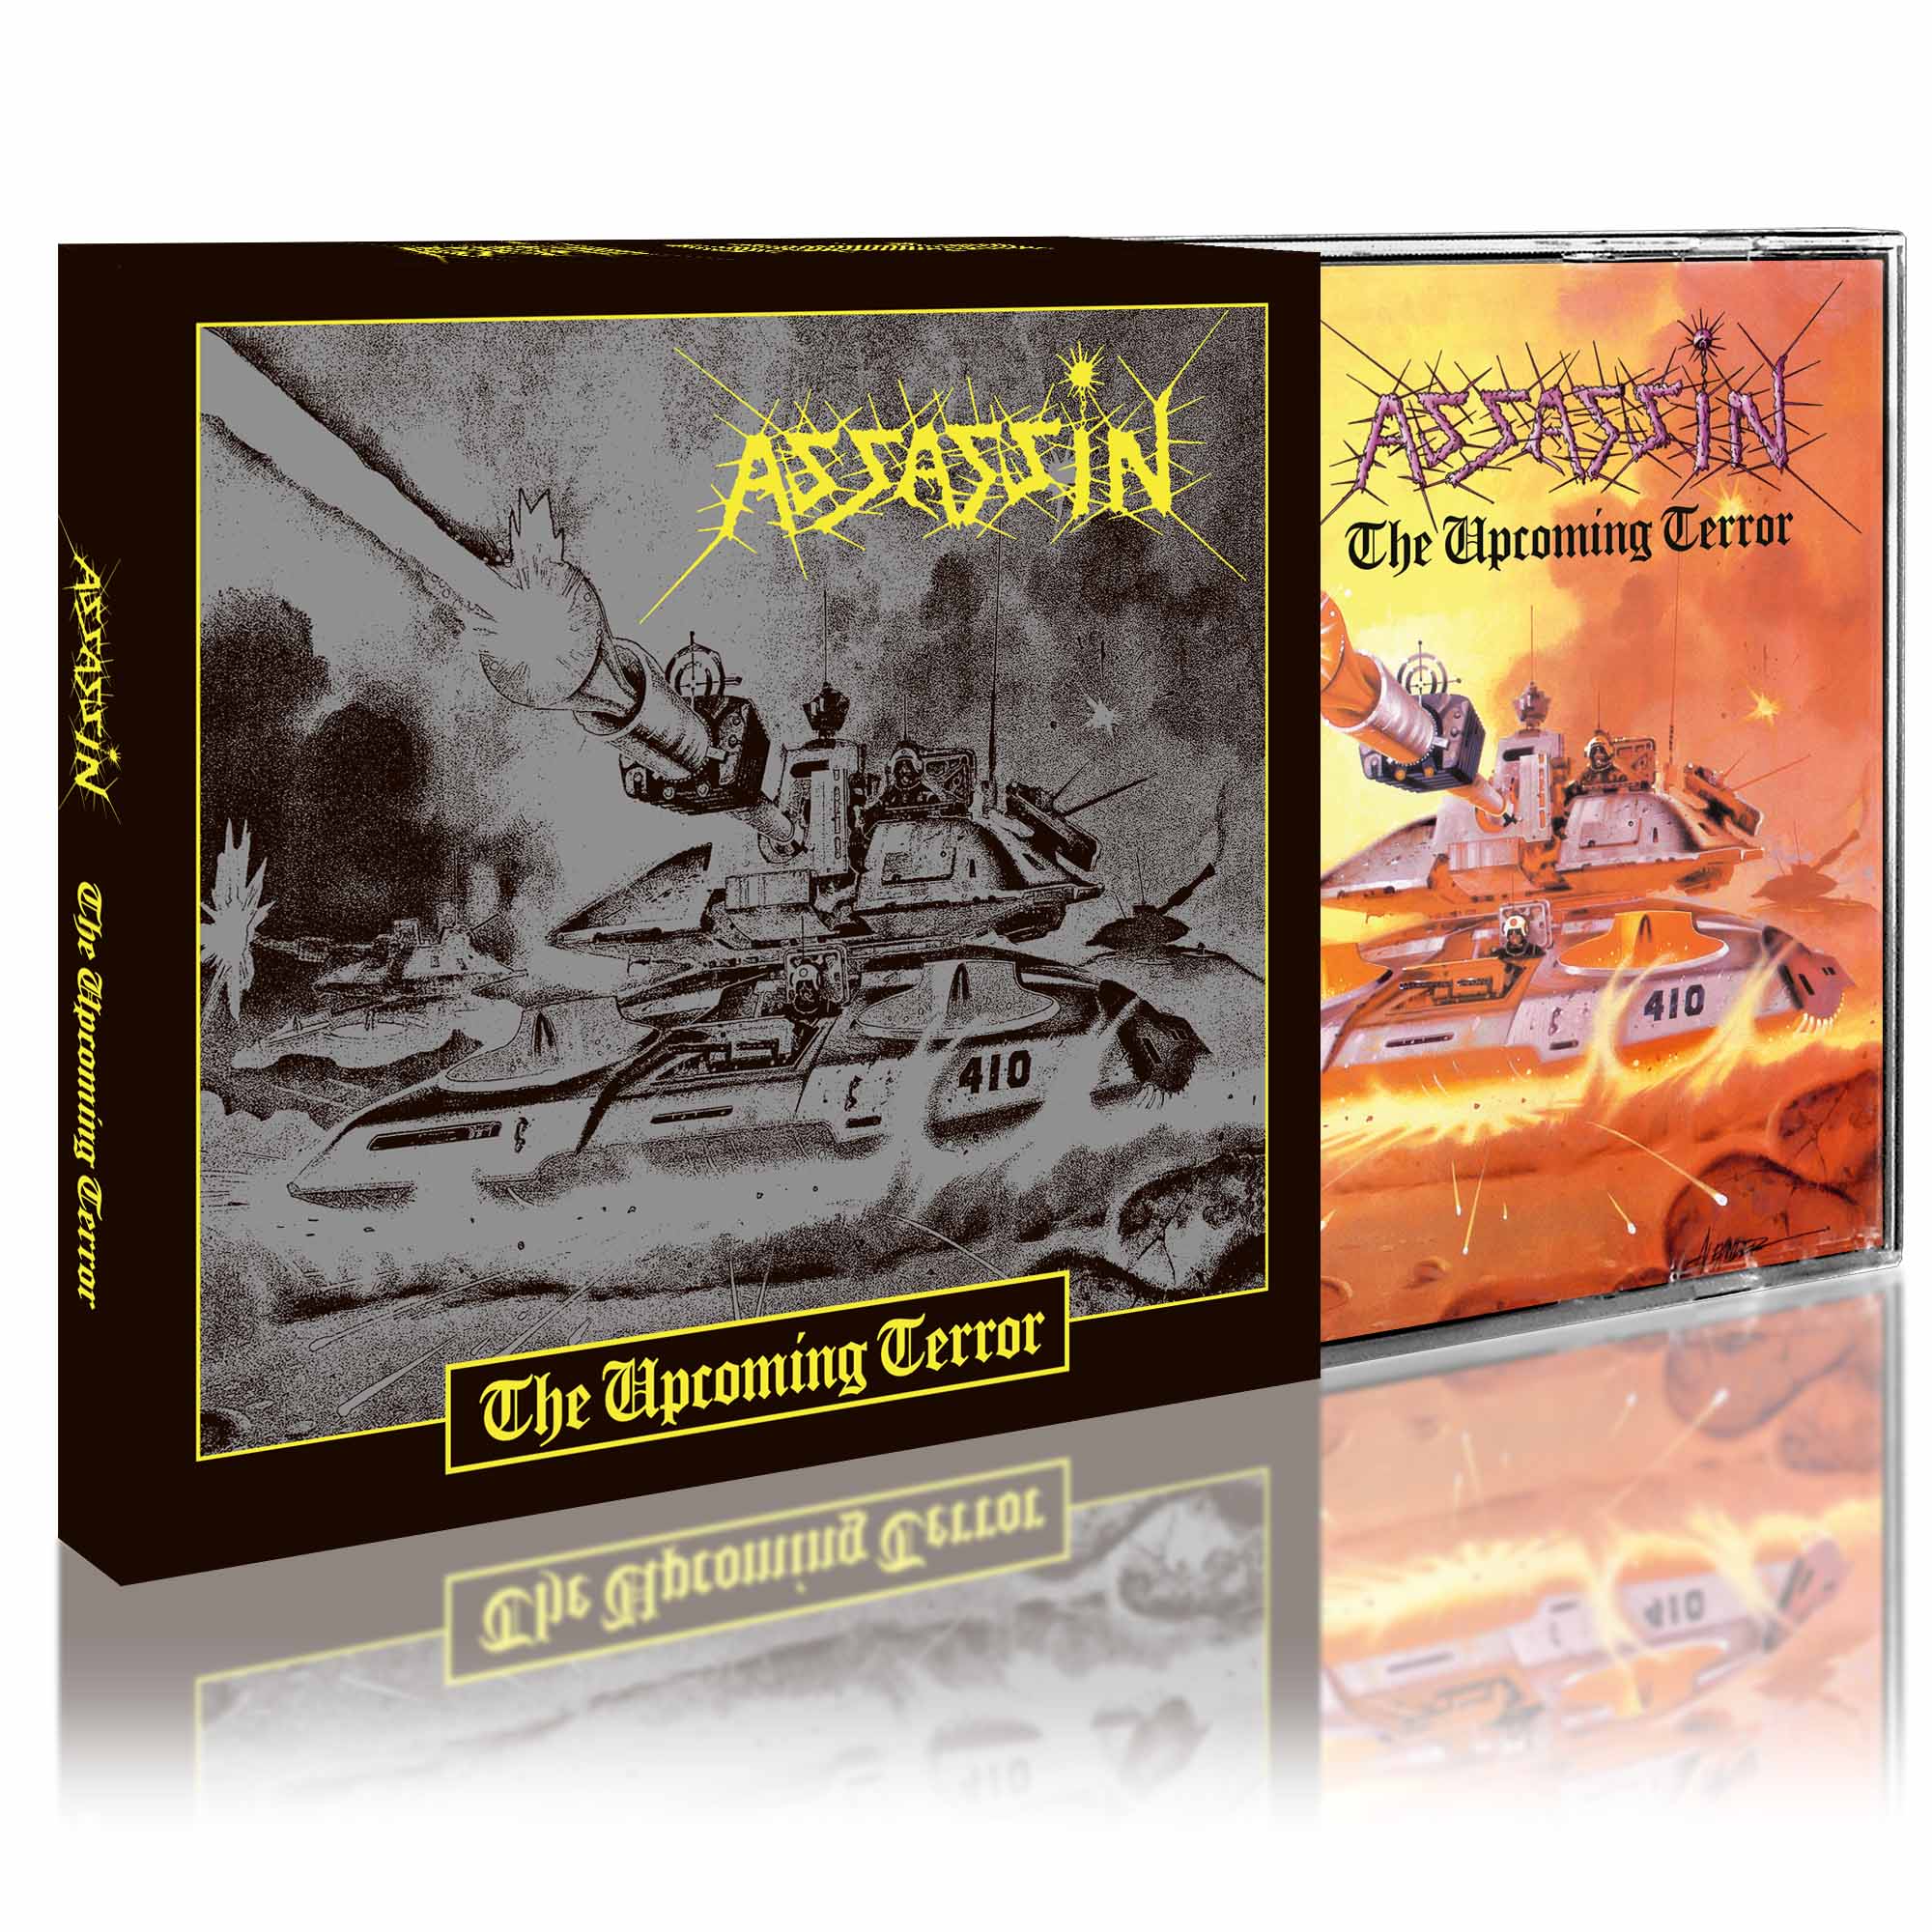 ASSASSIN - The Upcoming Terror CD